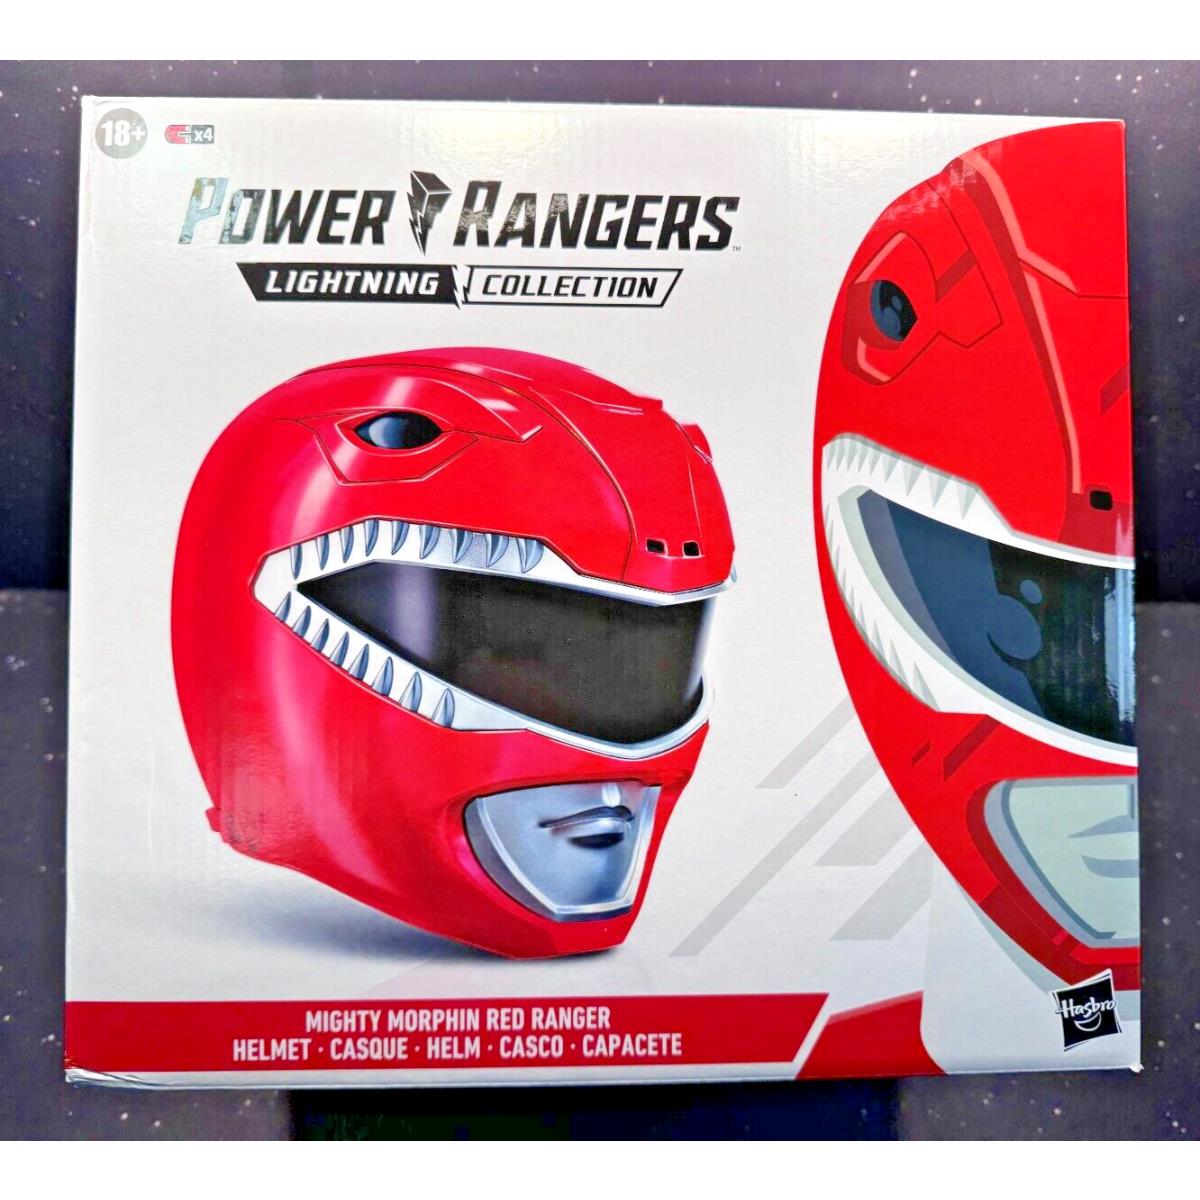 IN Stock Power Rangers Lightning Collection Premium Red Ranger Helmet Hasbro